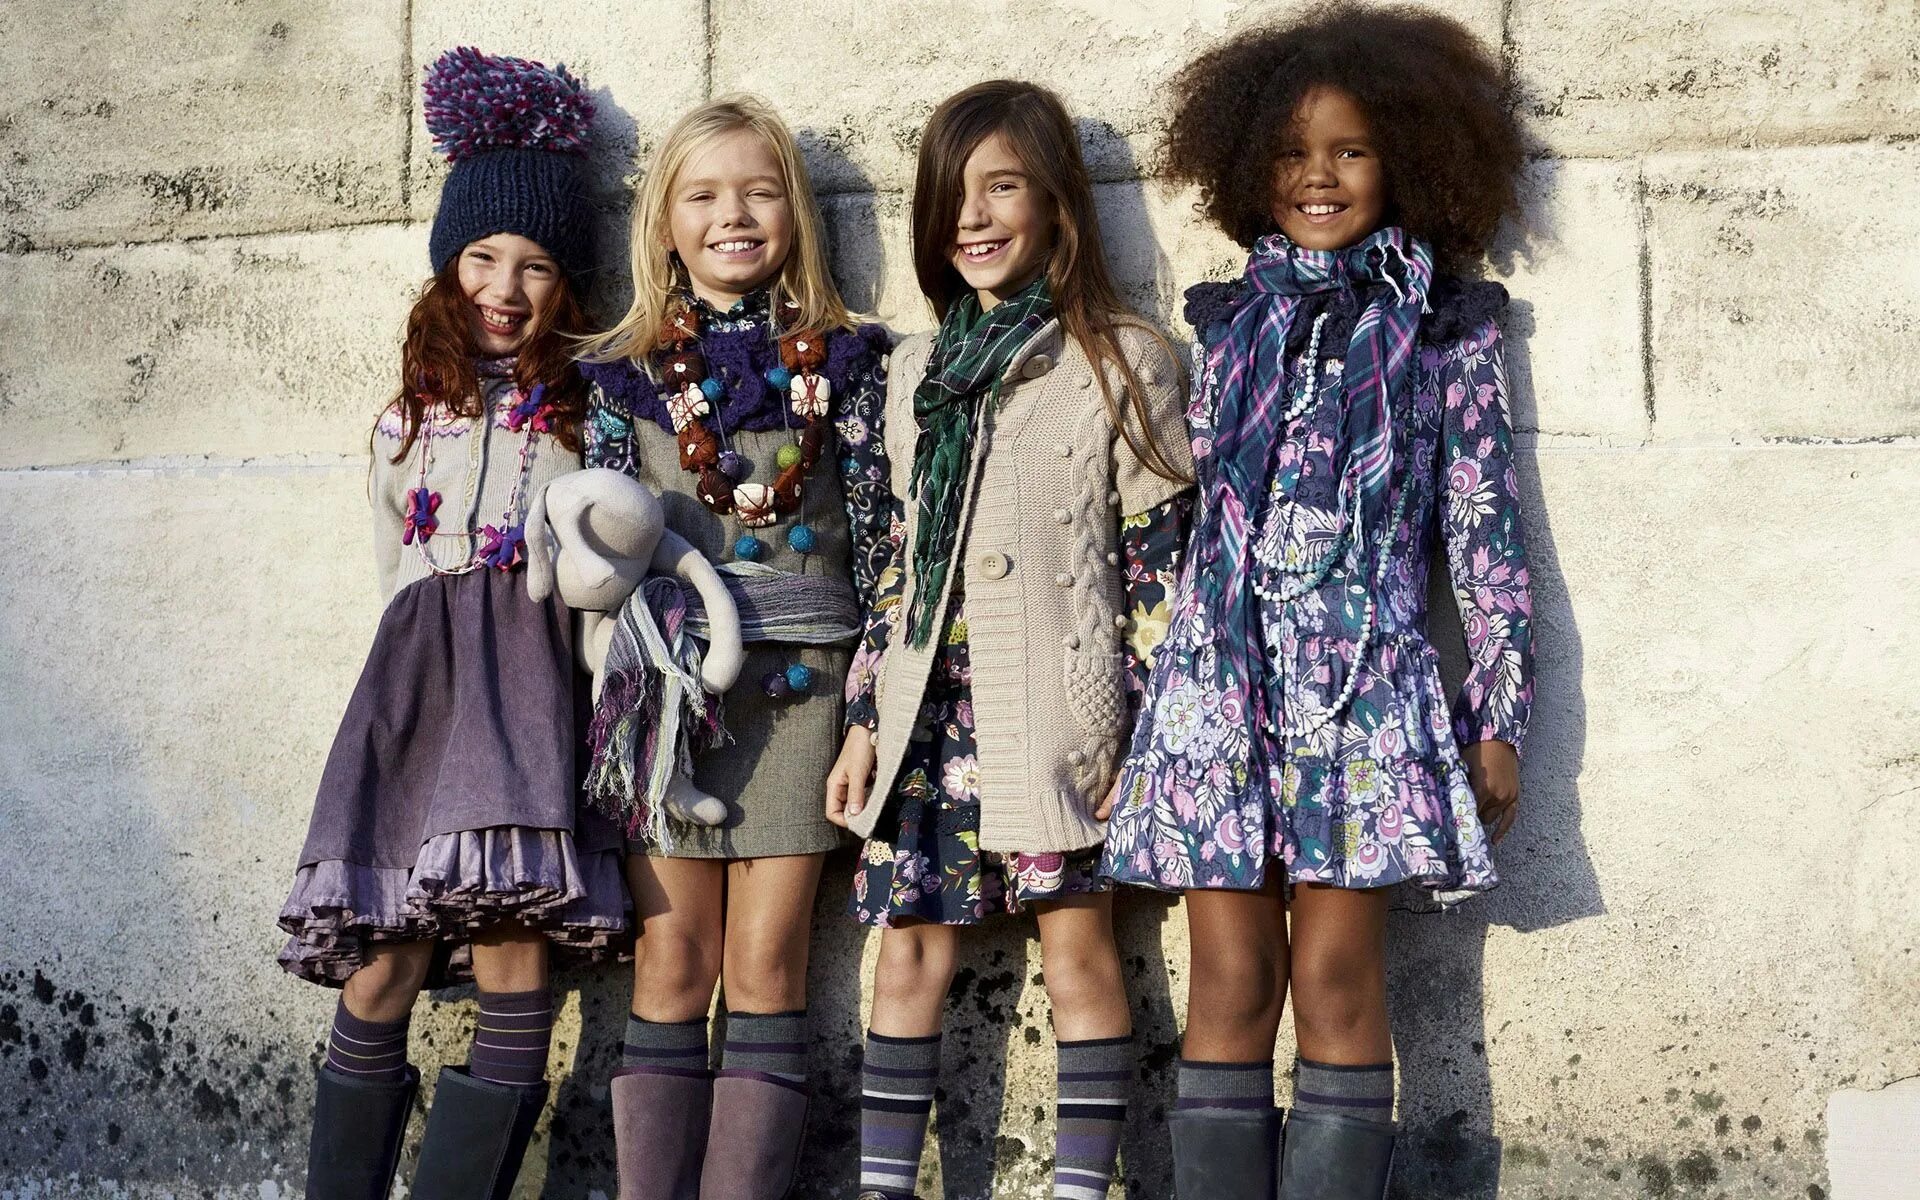 Children мода. Фашен КИД. Модная детская одежда. Стильная одежда для девочек. Современная одежда для детей.